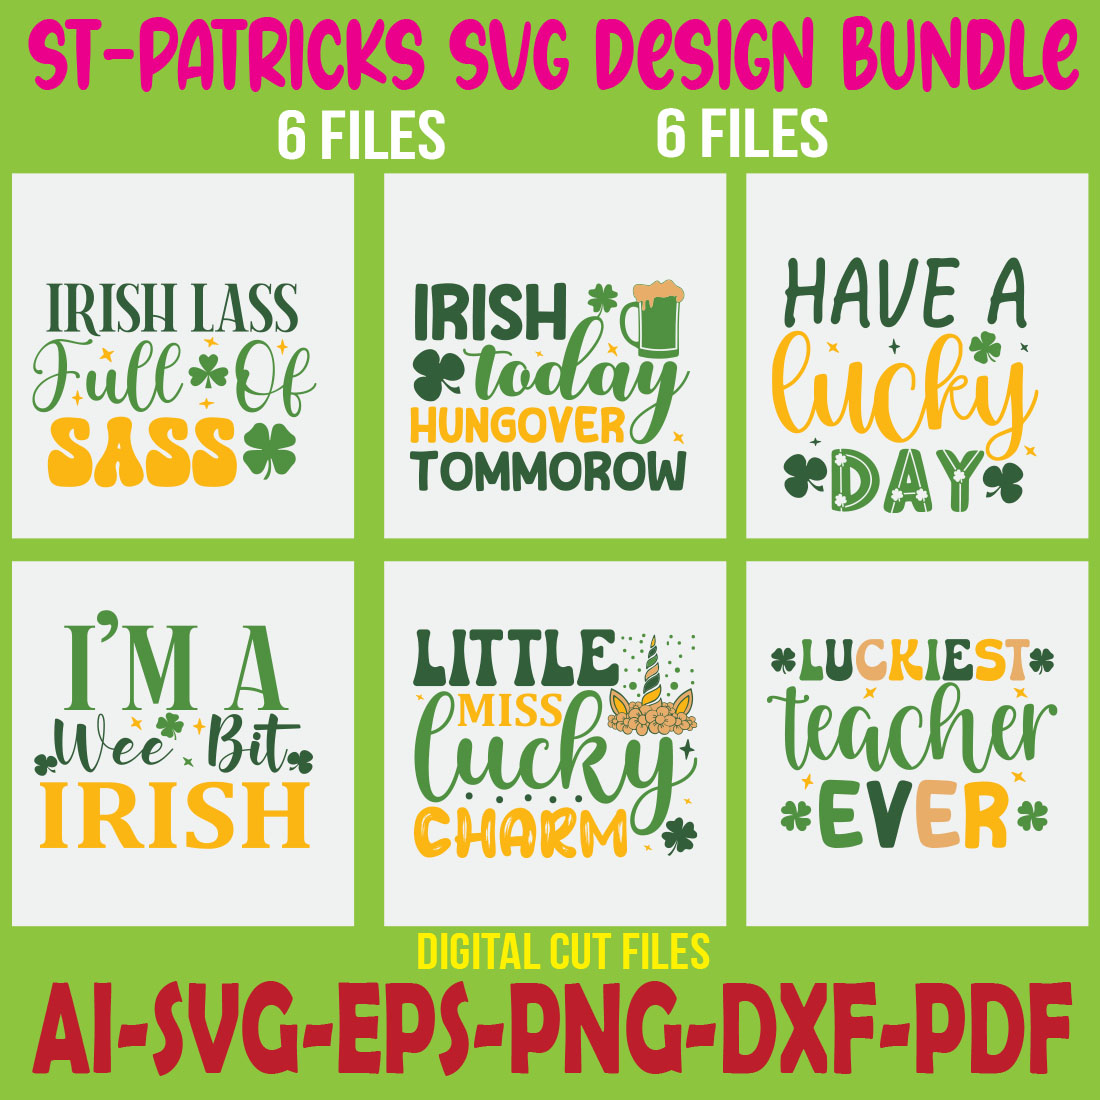 St-Patricks SVG Design Bundle cover image.